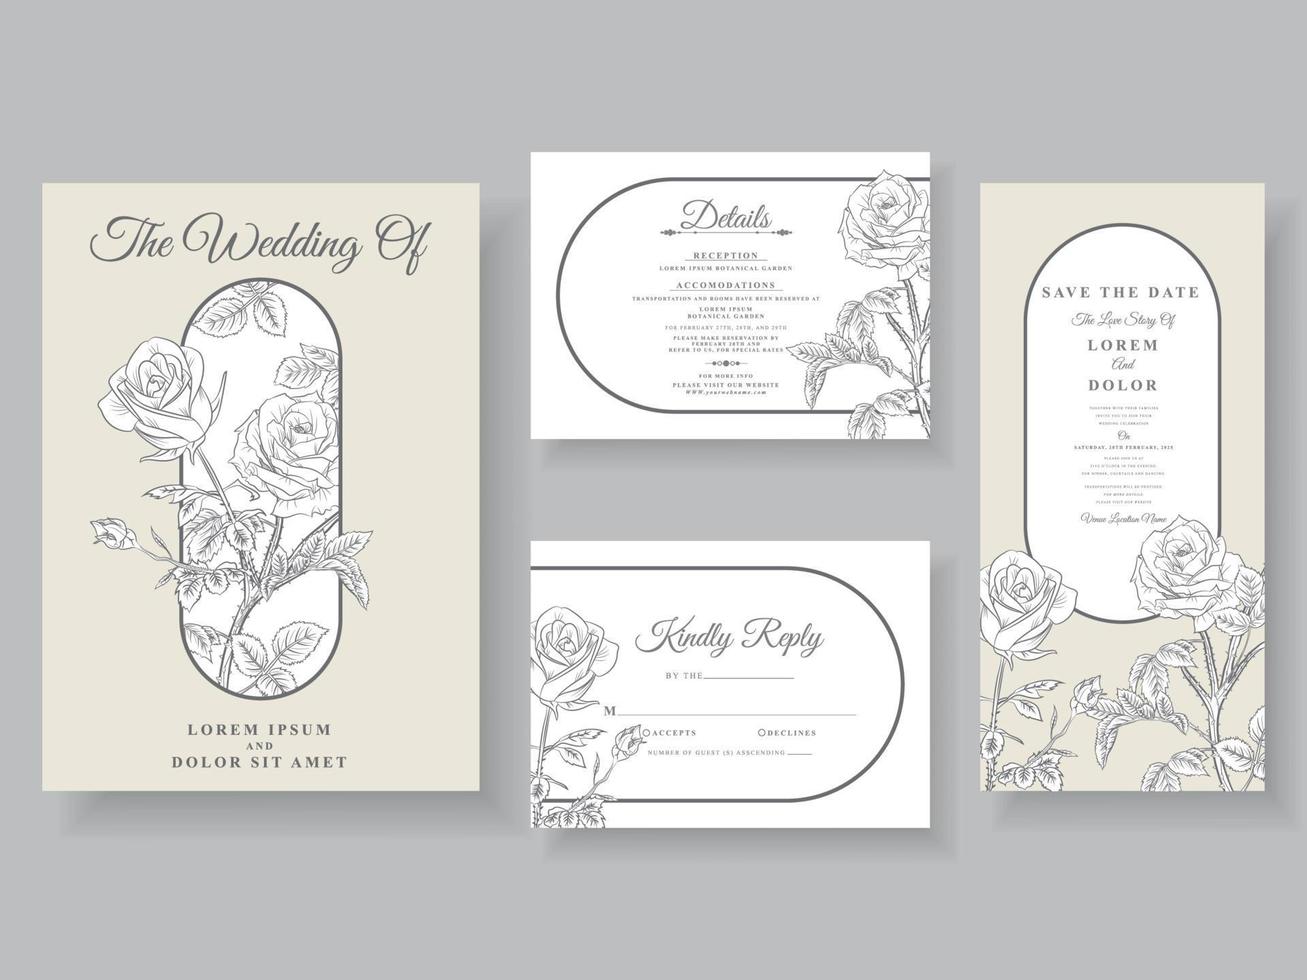 tarjeta de invitación de boda minimalista arte de línea floral vector